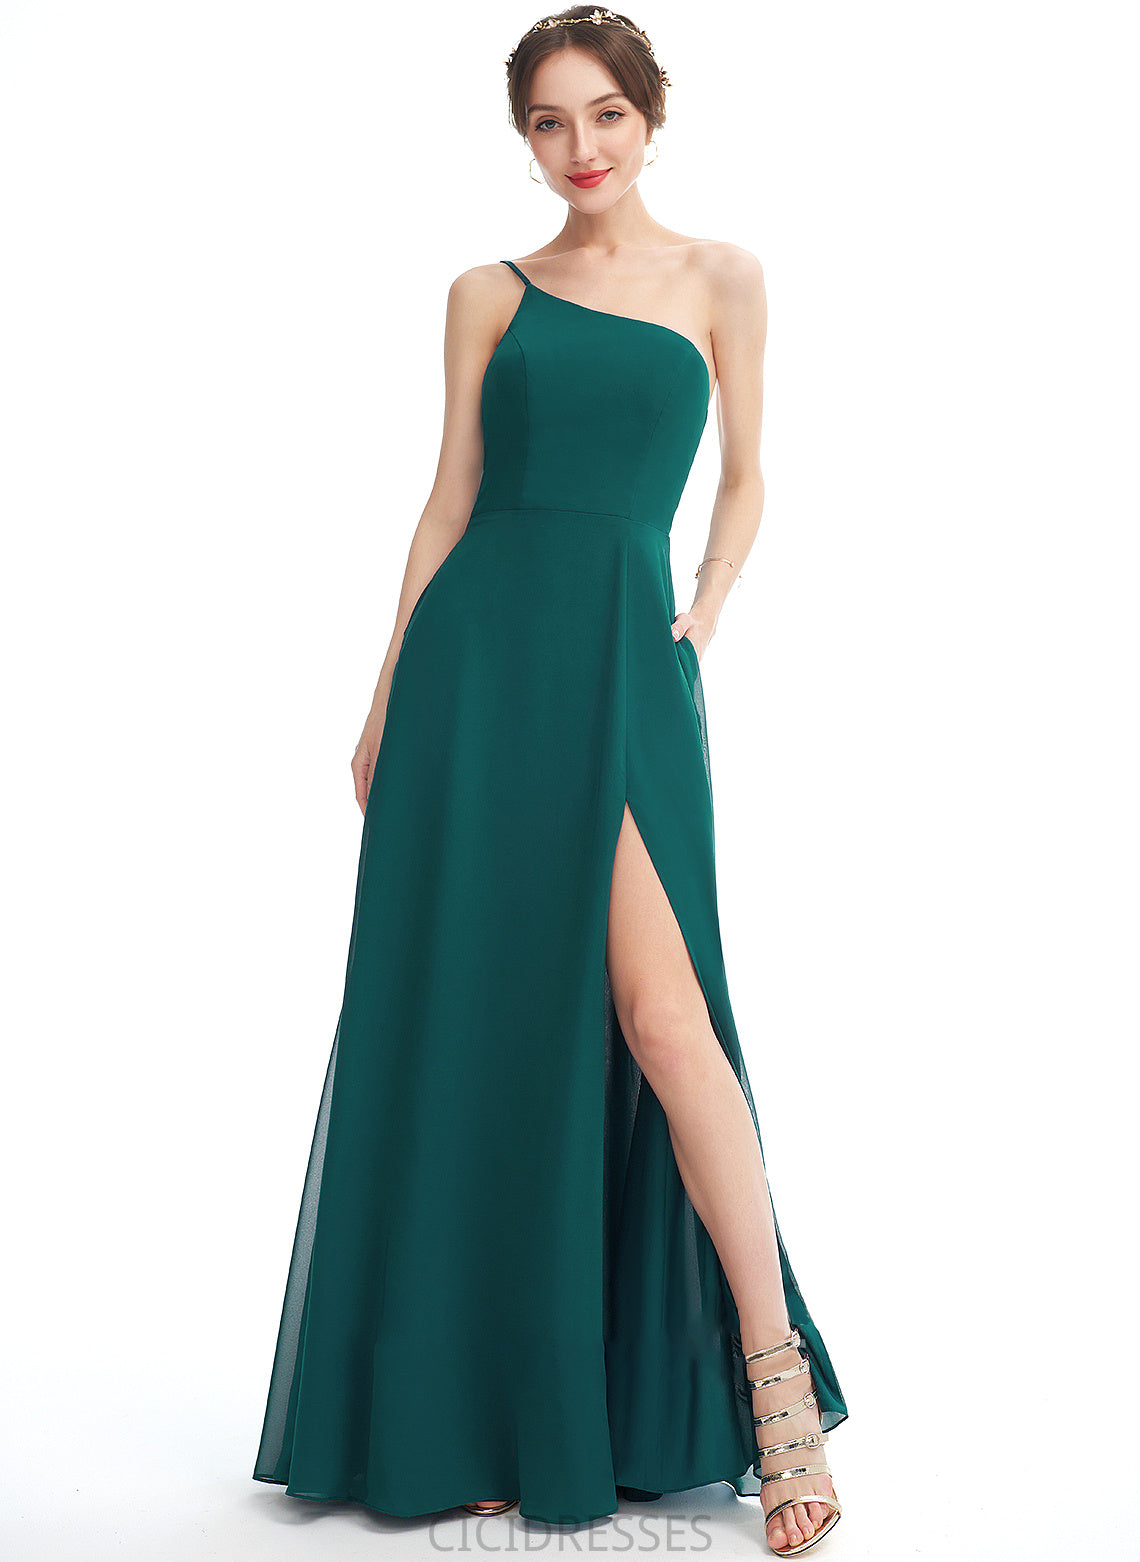 Silhouette Pockets Floor-Length Length SplitFront A-Line One-Shoulder Neckline Fabric Embellishment Hanna V-Neck Bridesmaid Dresses